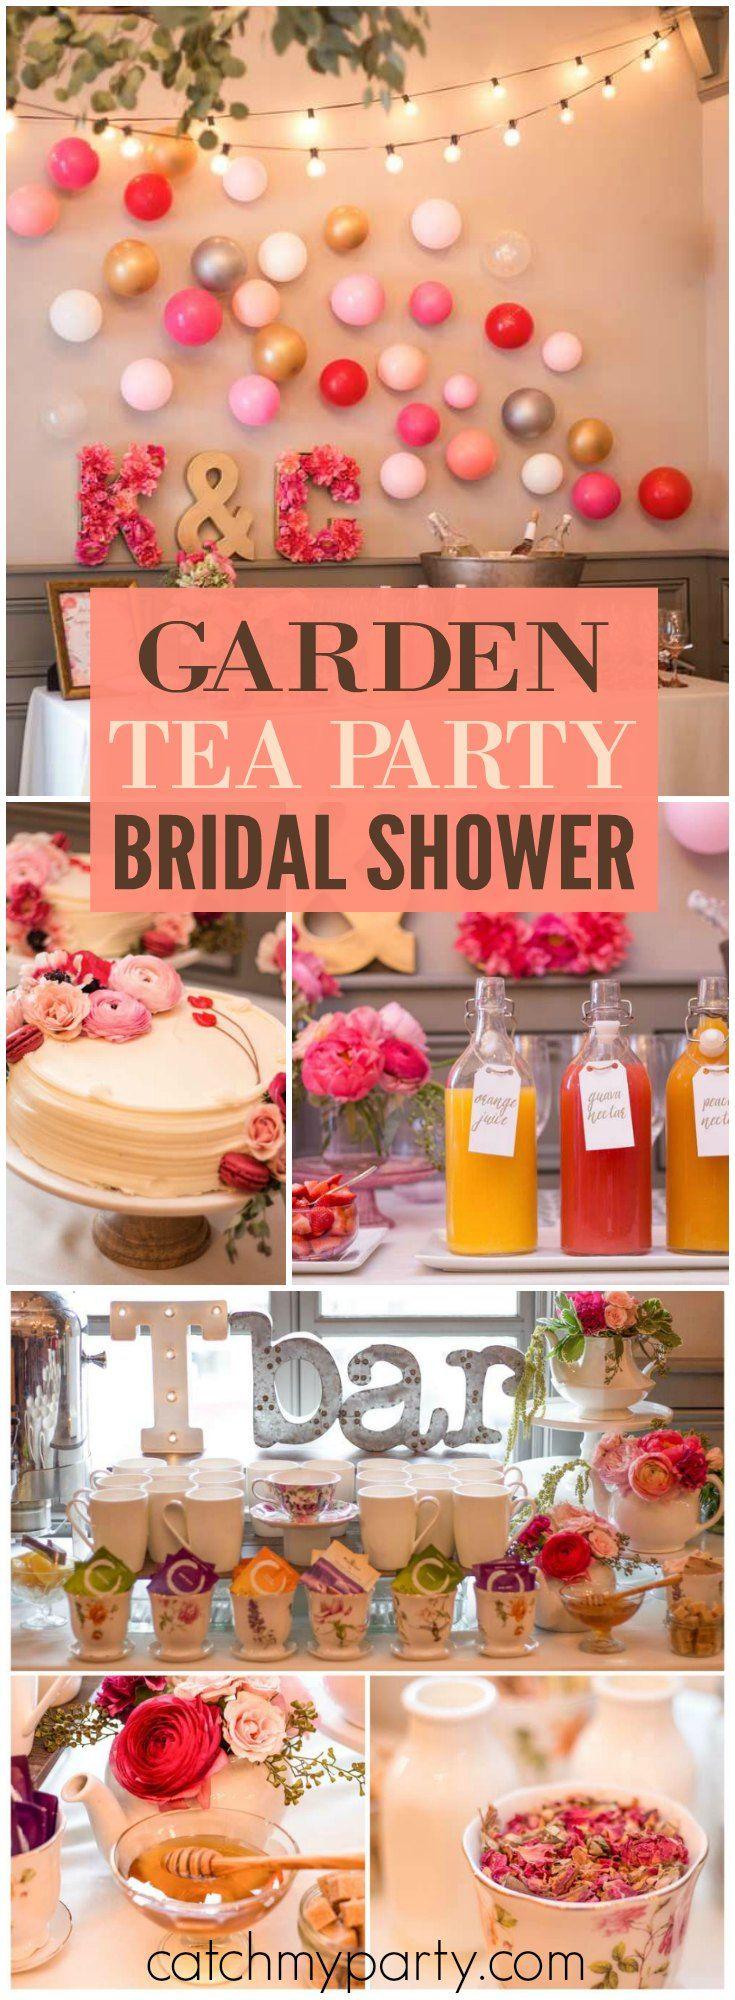 Mariage - Garden Tea Party / Bridal/Wedding Shower "Kimberly' S Garden Tea Party"